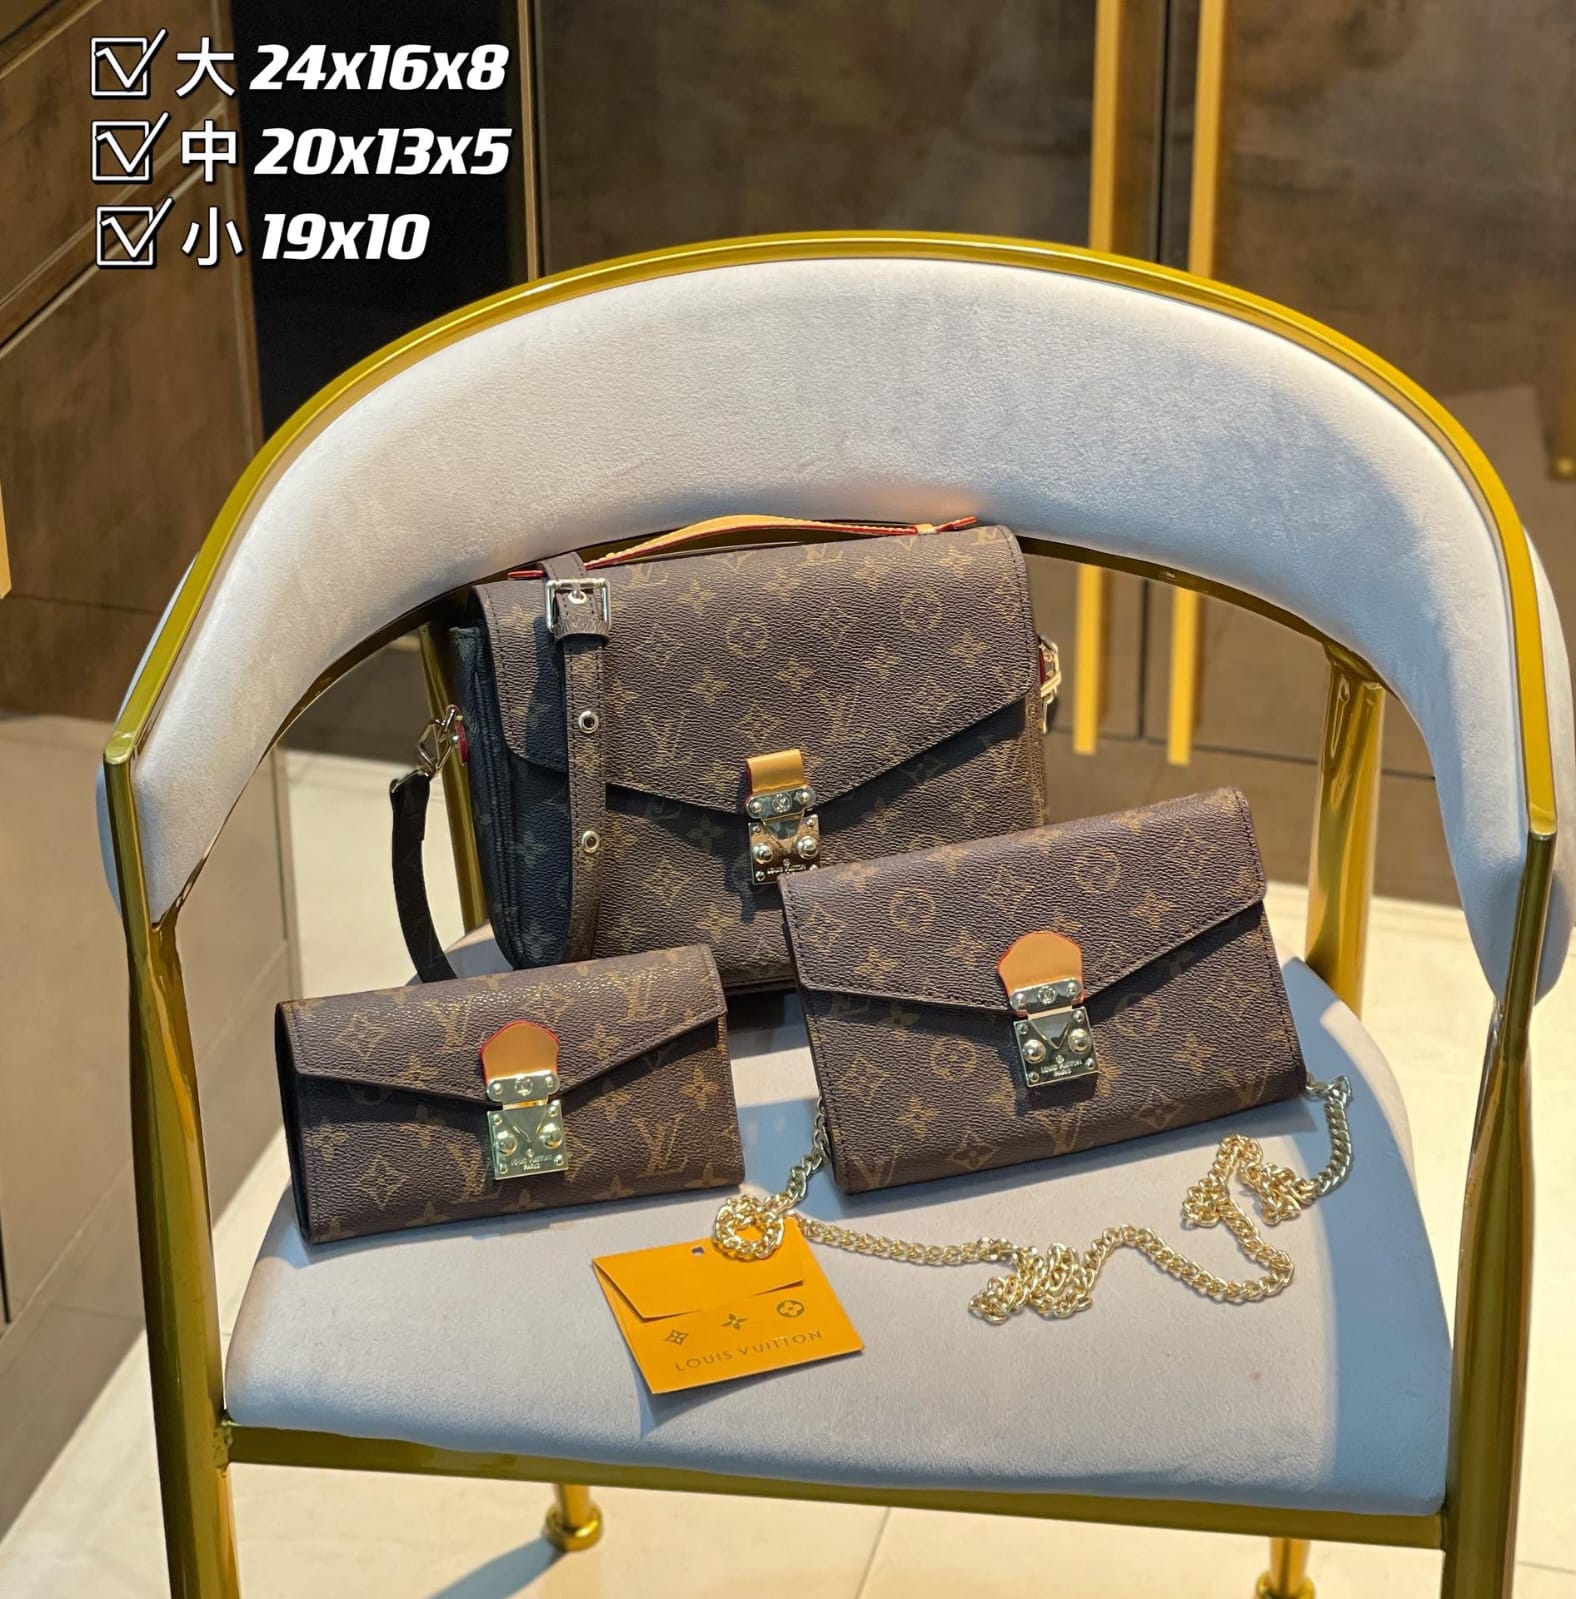 Louis Vuitton POCHETTE MÉTIS Handbag Sets